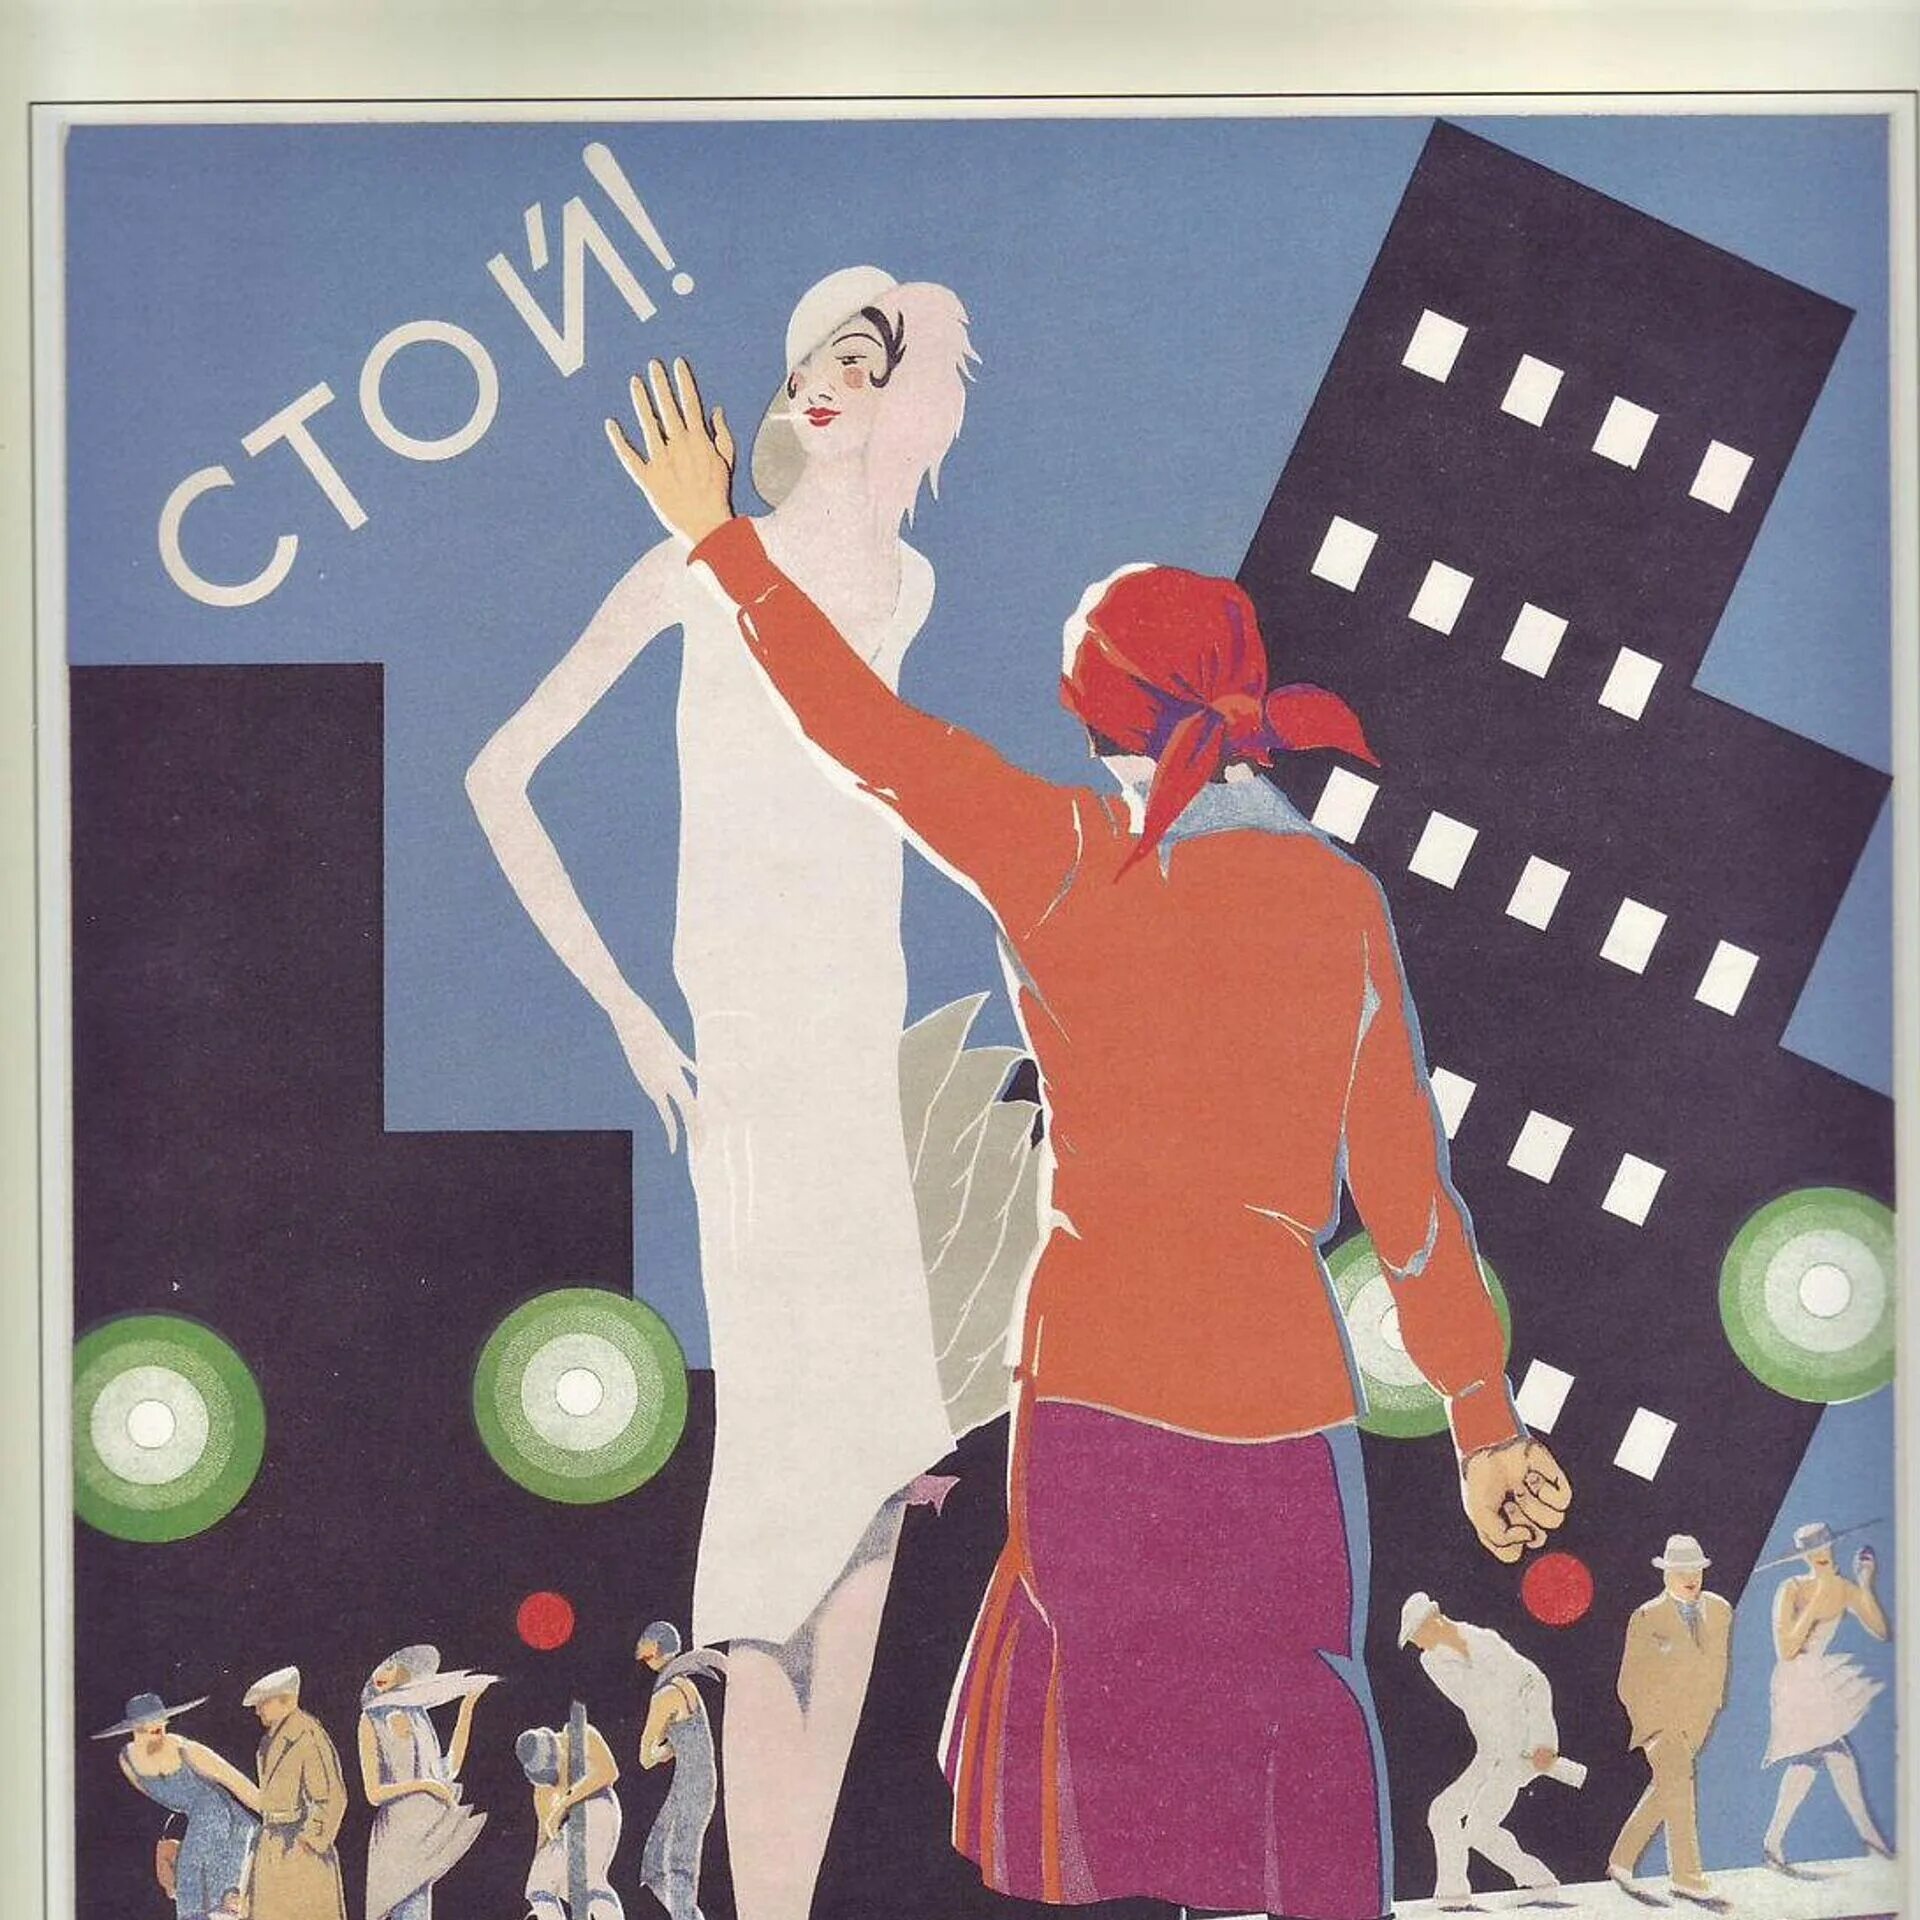 Советские плакаты. Советские плакаты современные. Социальные плакаты СССР. Современные плакаты в Советском стиле. Рекламный плакат социальной профессии